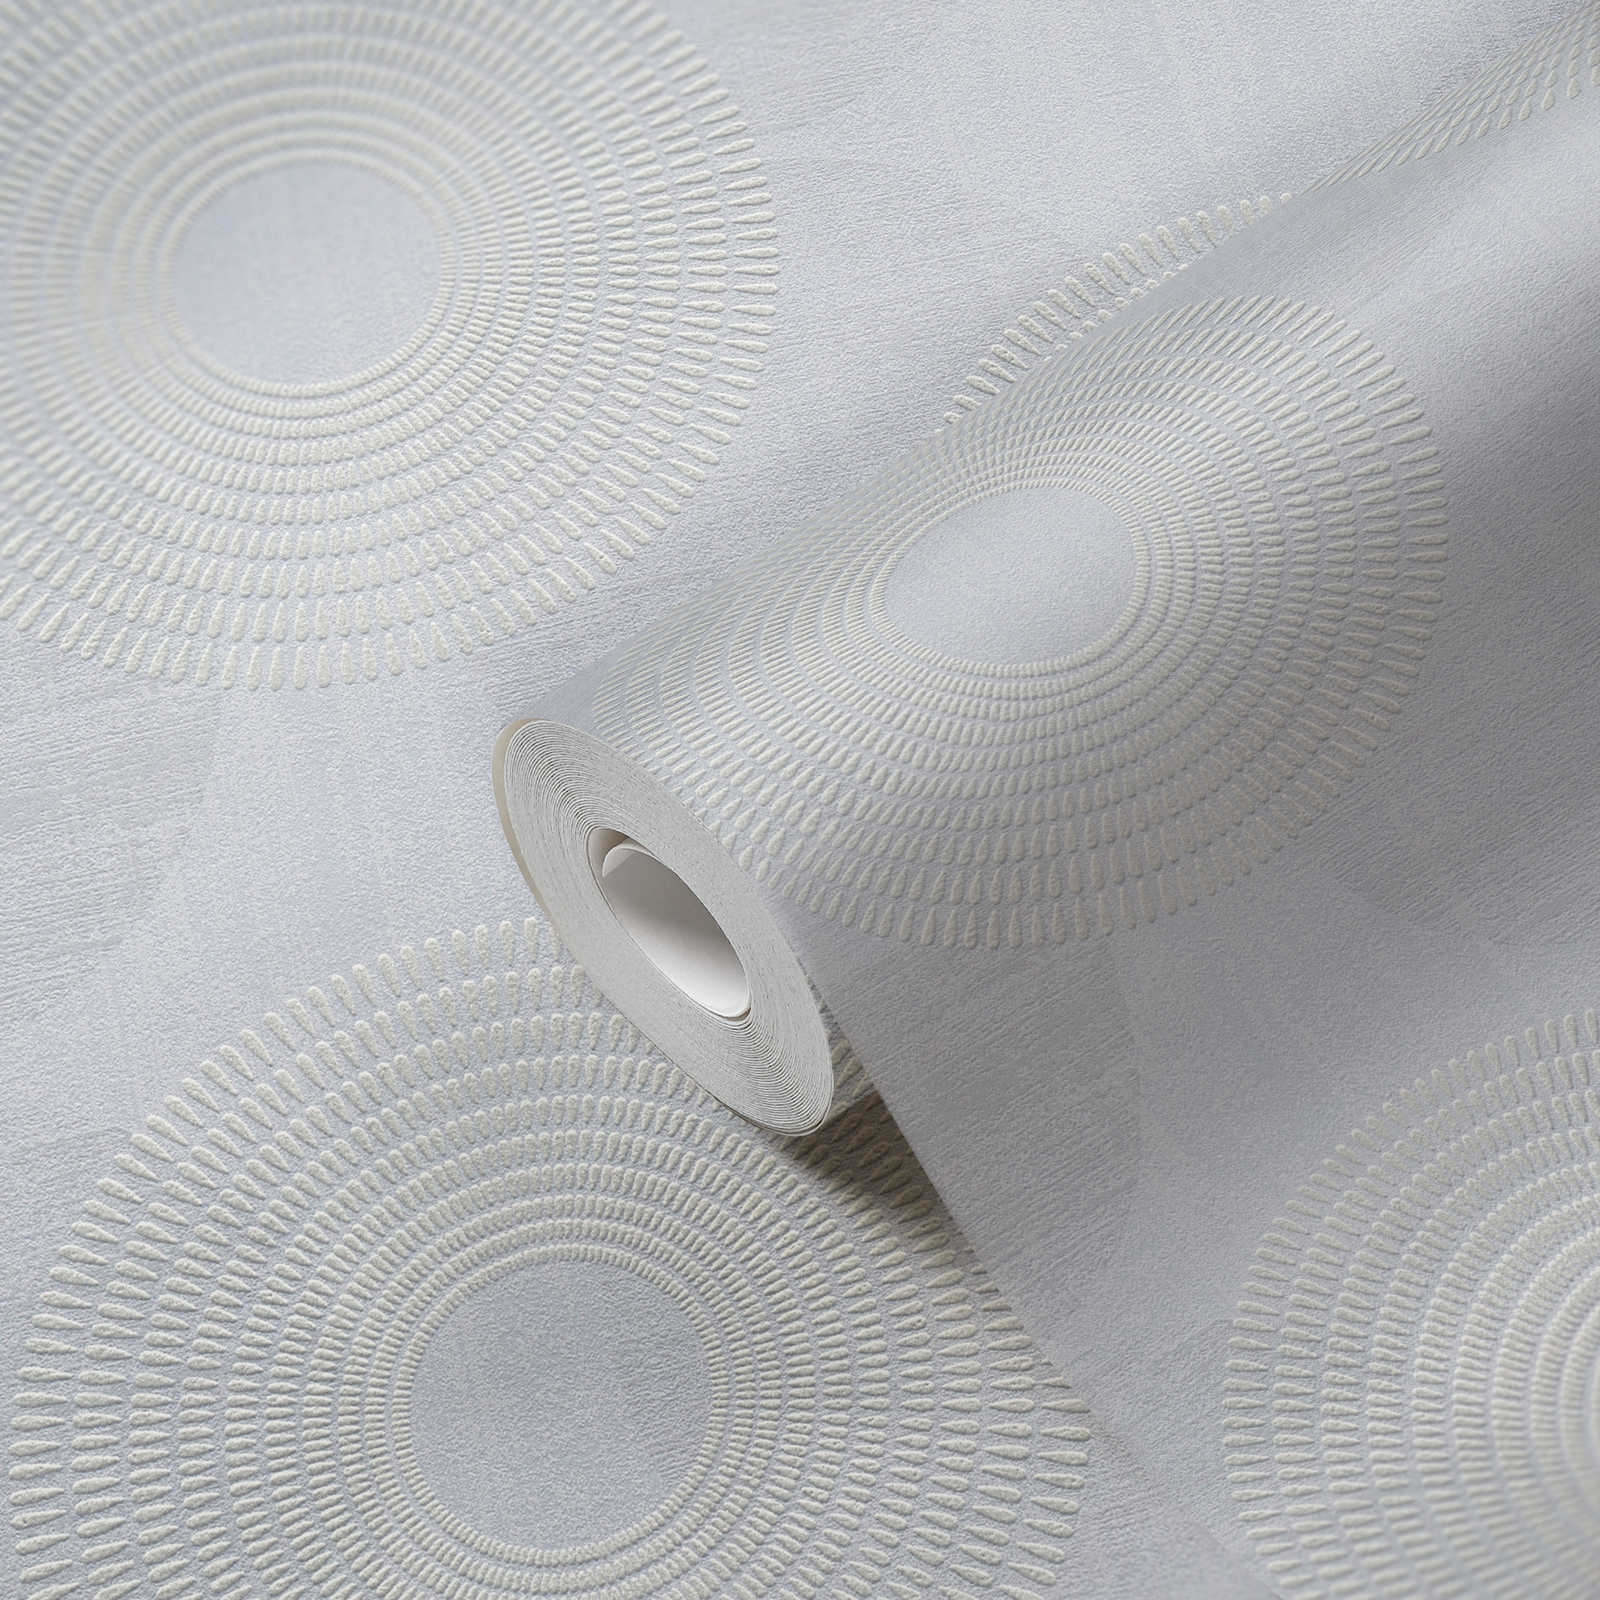             Carta da parati in tessuto non tessuto con disegno geometrico di cerchi - grigio
        